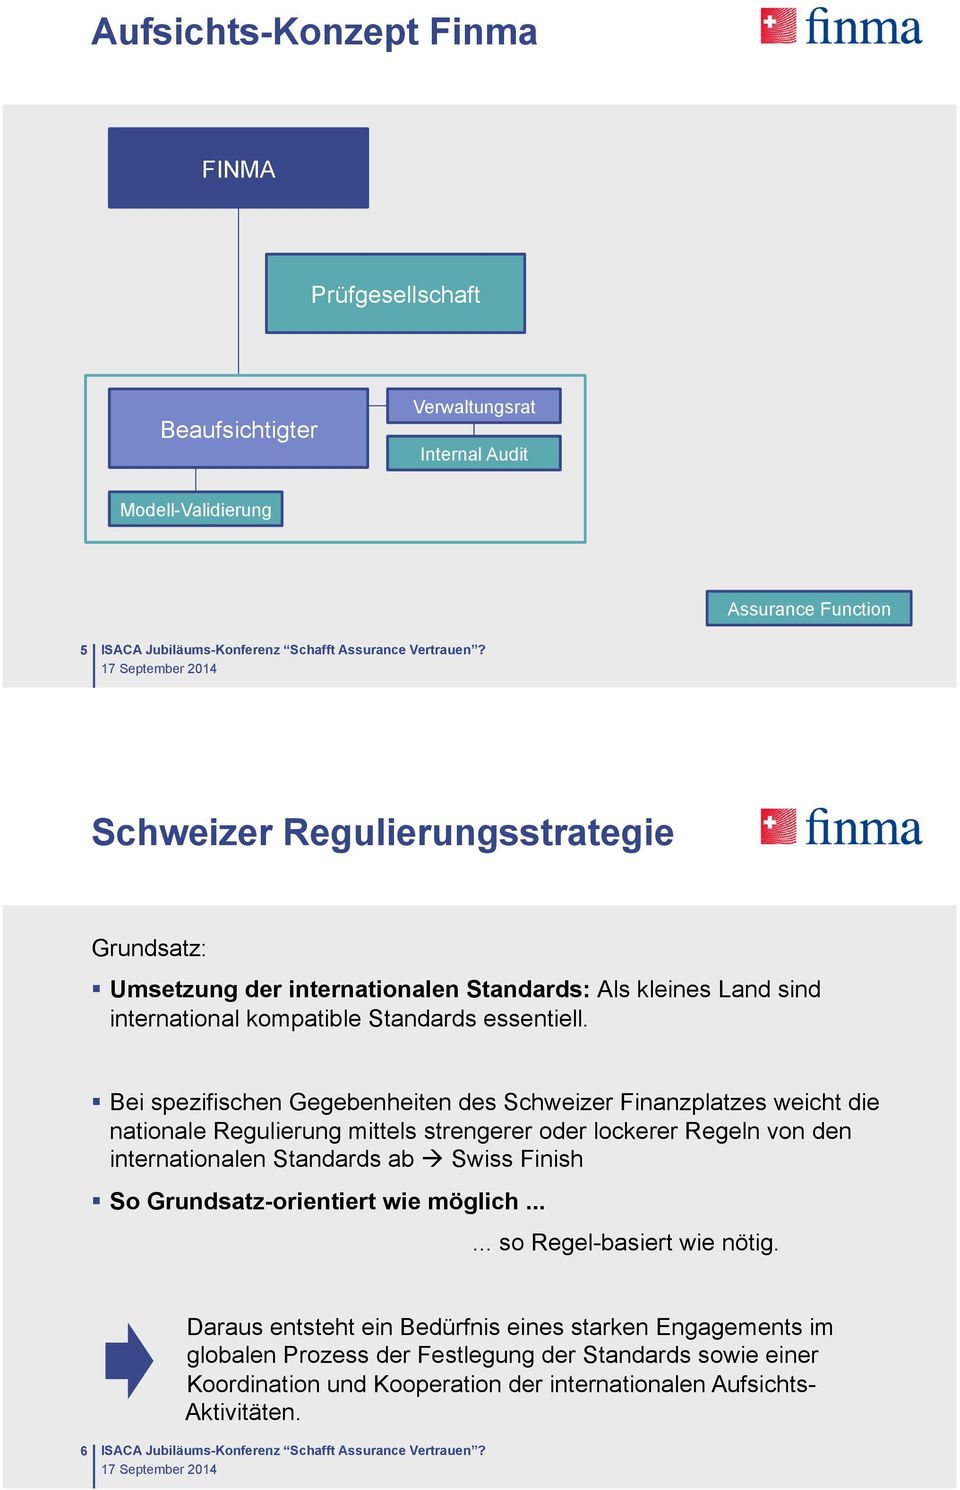 Bei spezifischen Gegebenheiten des Schweizer Finanzplatzes weicht die nationale Regulierung mittels strengerer oder lockerer Regeln von den internationalen Standards ab Swiss Finish